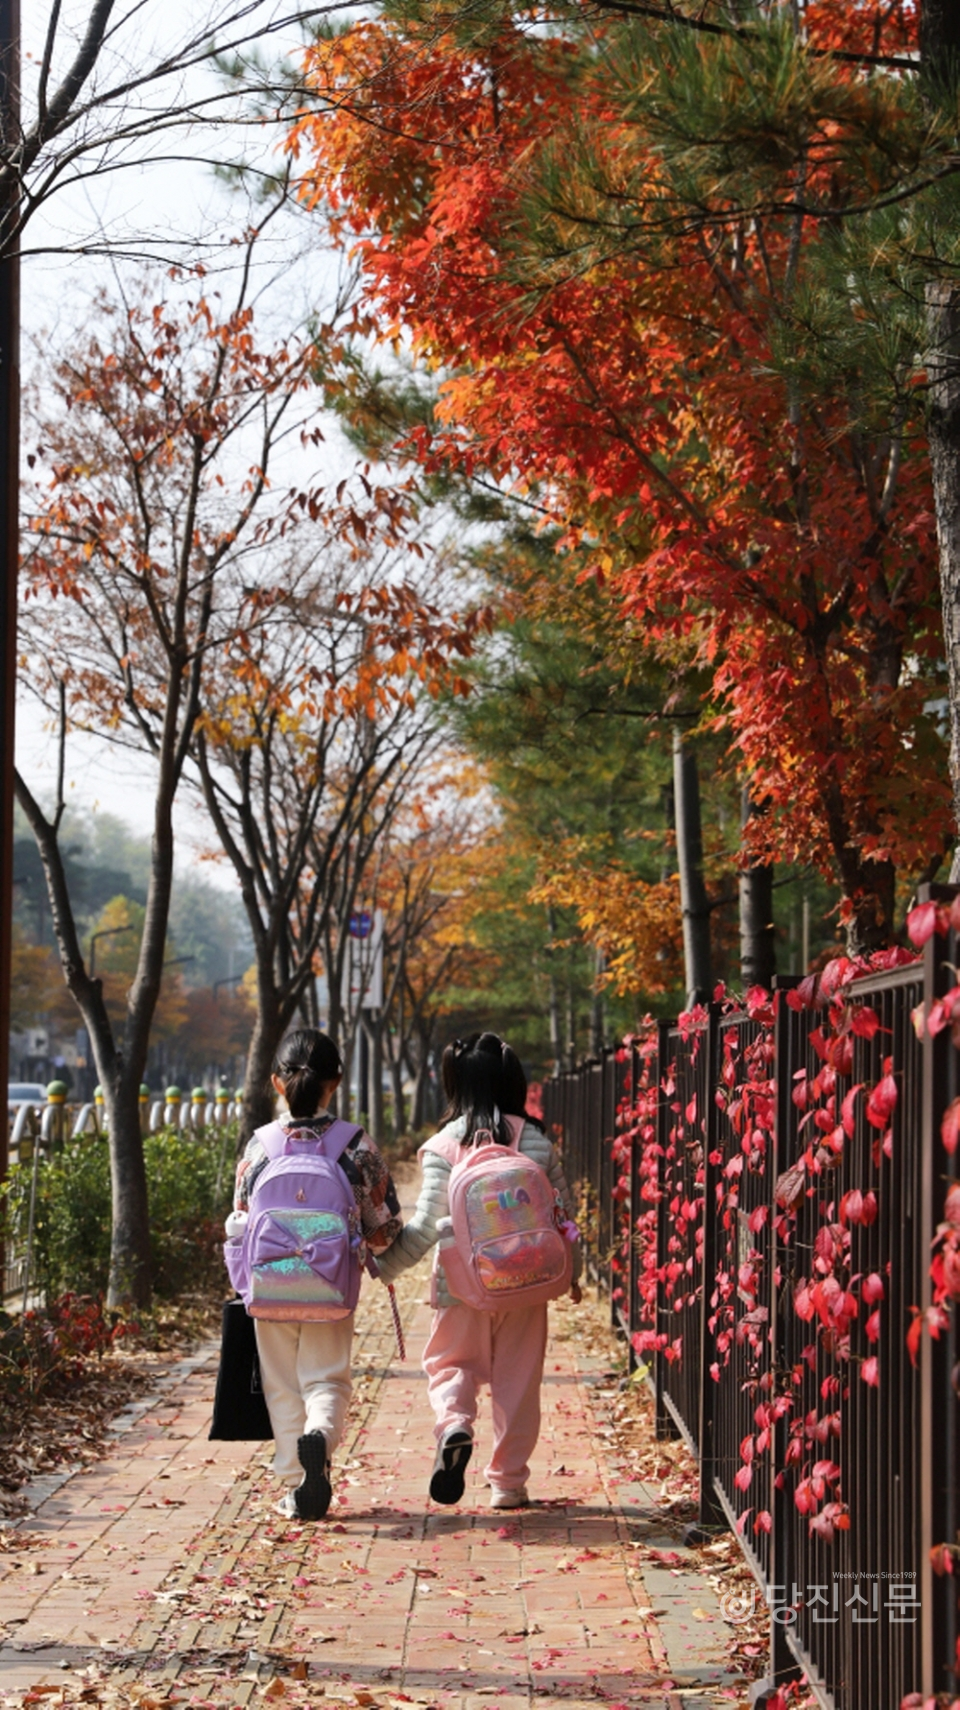 대덕초등학교 옆 하교길. 10월의 막바지에 붉게 물든 나무들이 눈에 띄고, 학교를 마친 아이들이 단풍잎 사이로 하교하고 있다. ⓒ당진신문 허미르 기자